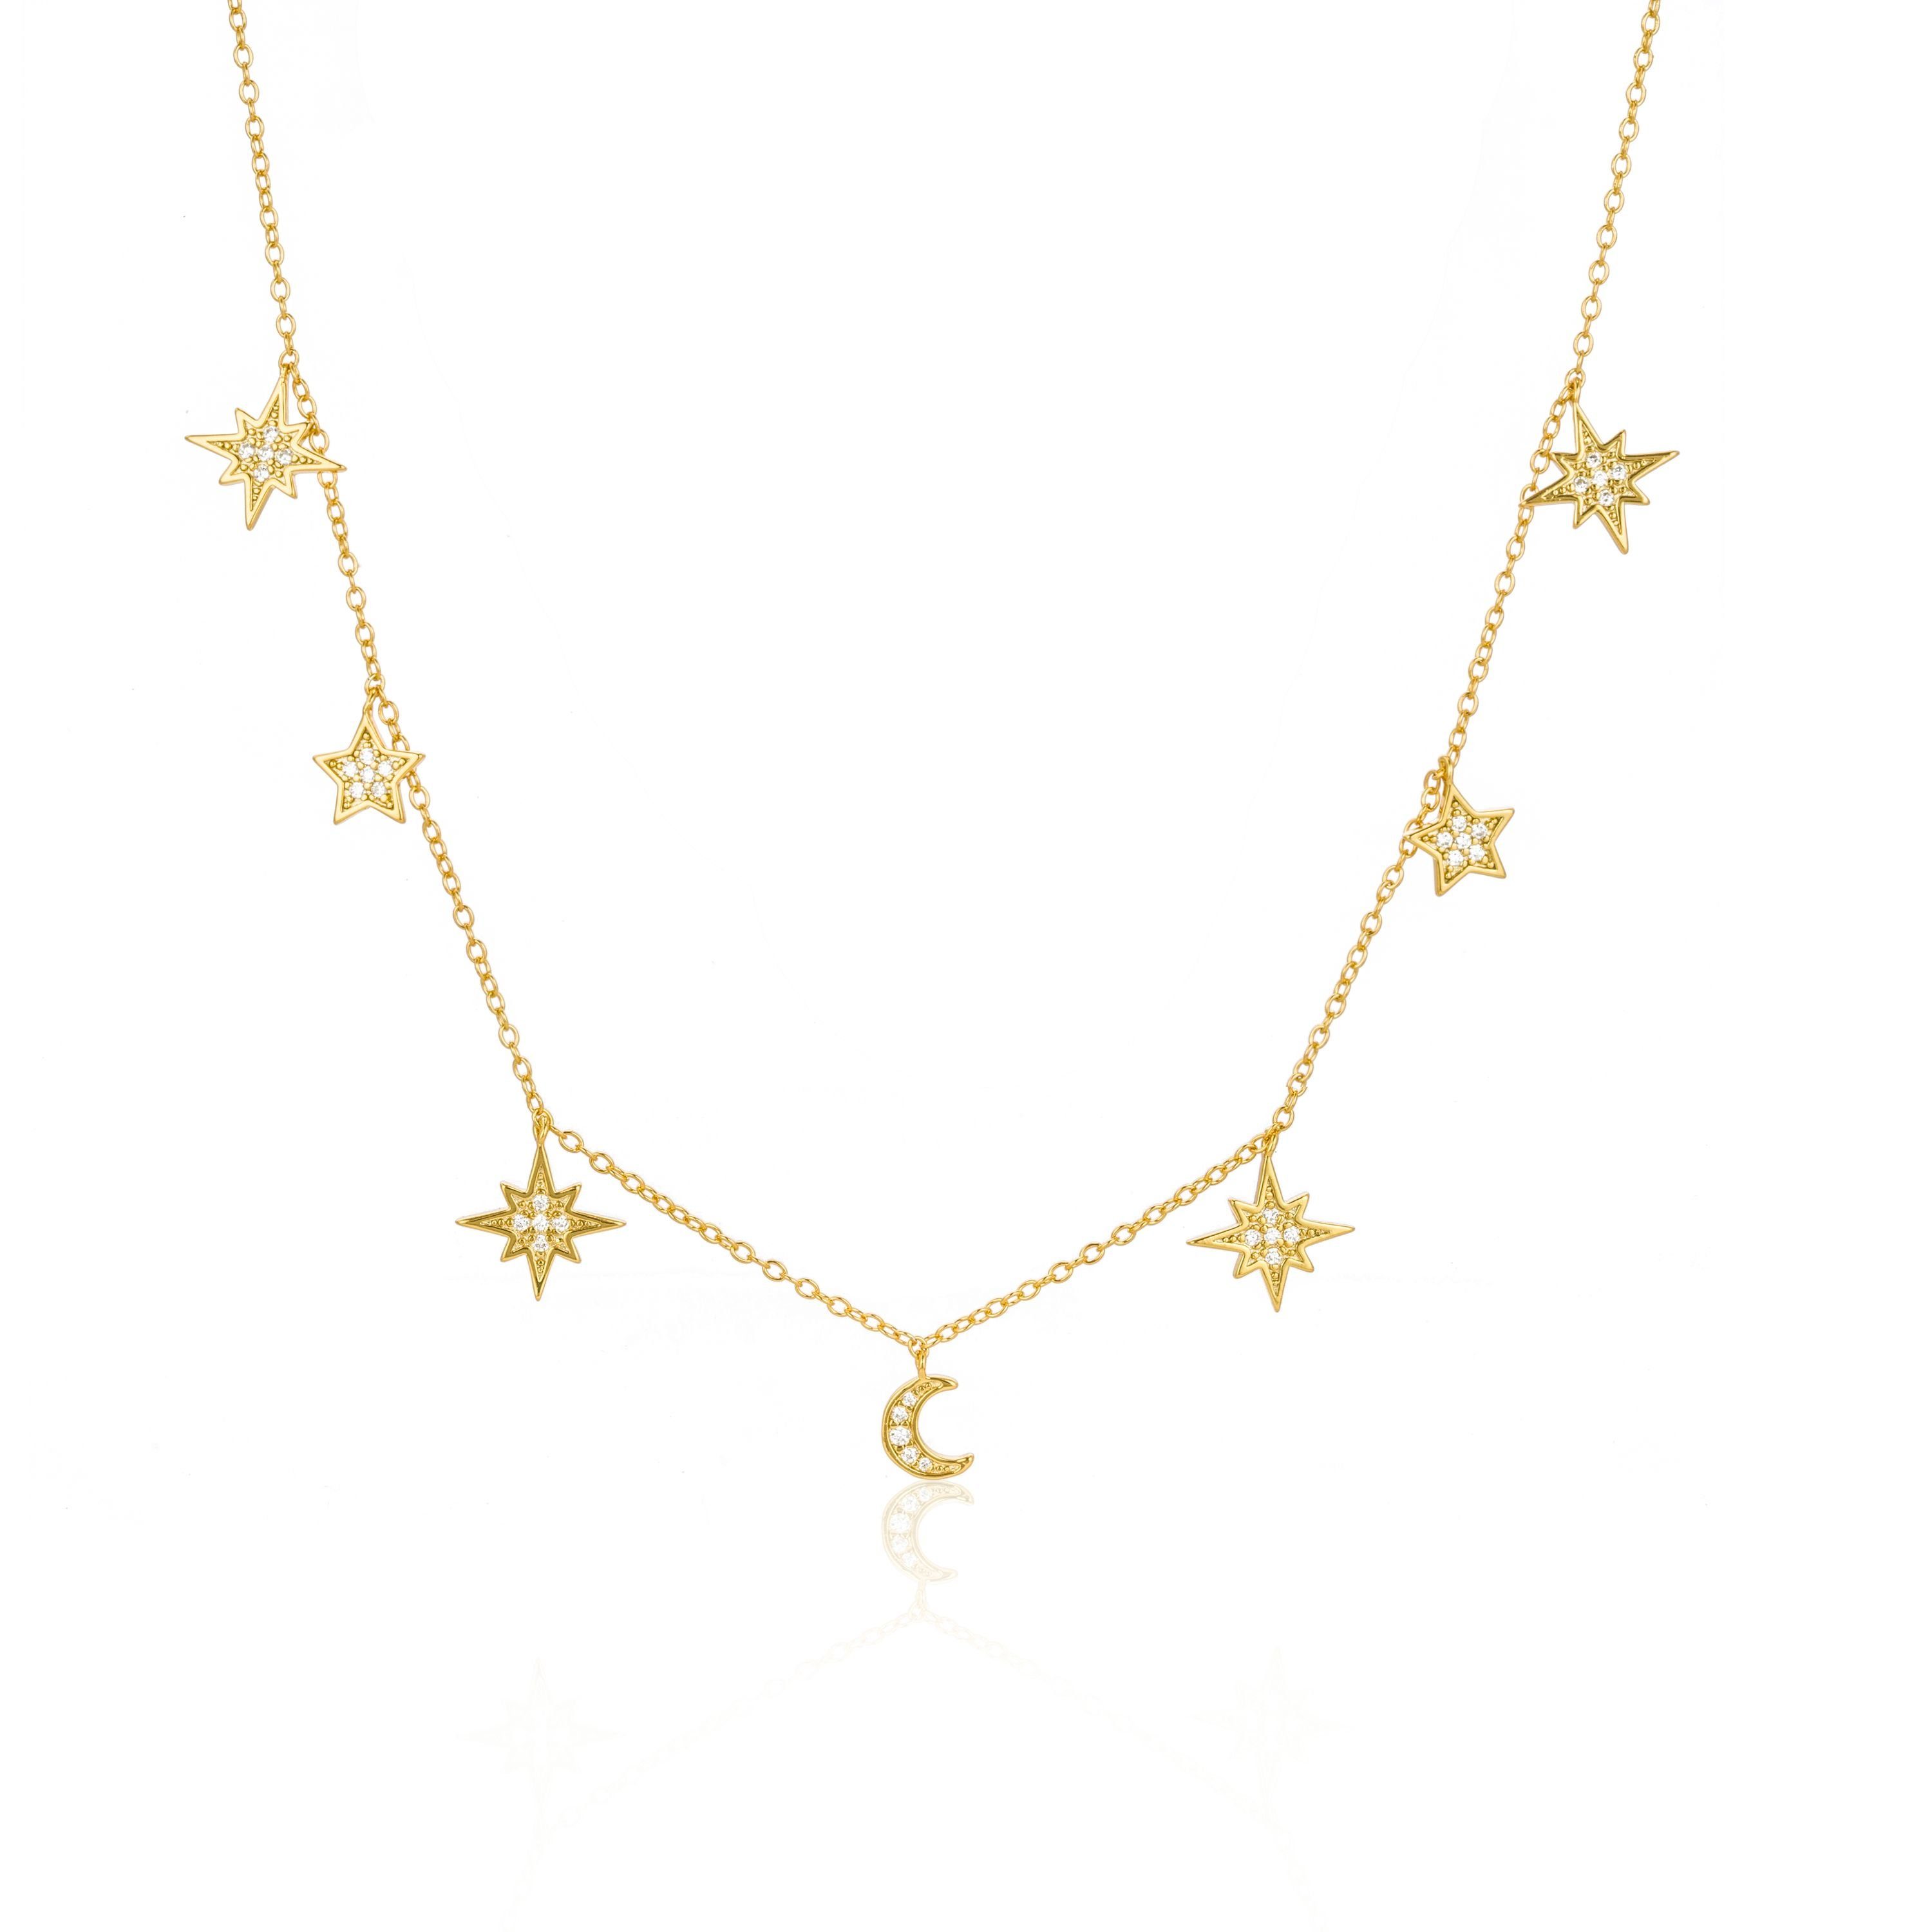 Brandlinger Kette mit Anhänger Halskette Luanda, Mond und Sterne Silber 925 vergoldet, Weiße Zirkoniasteine